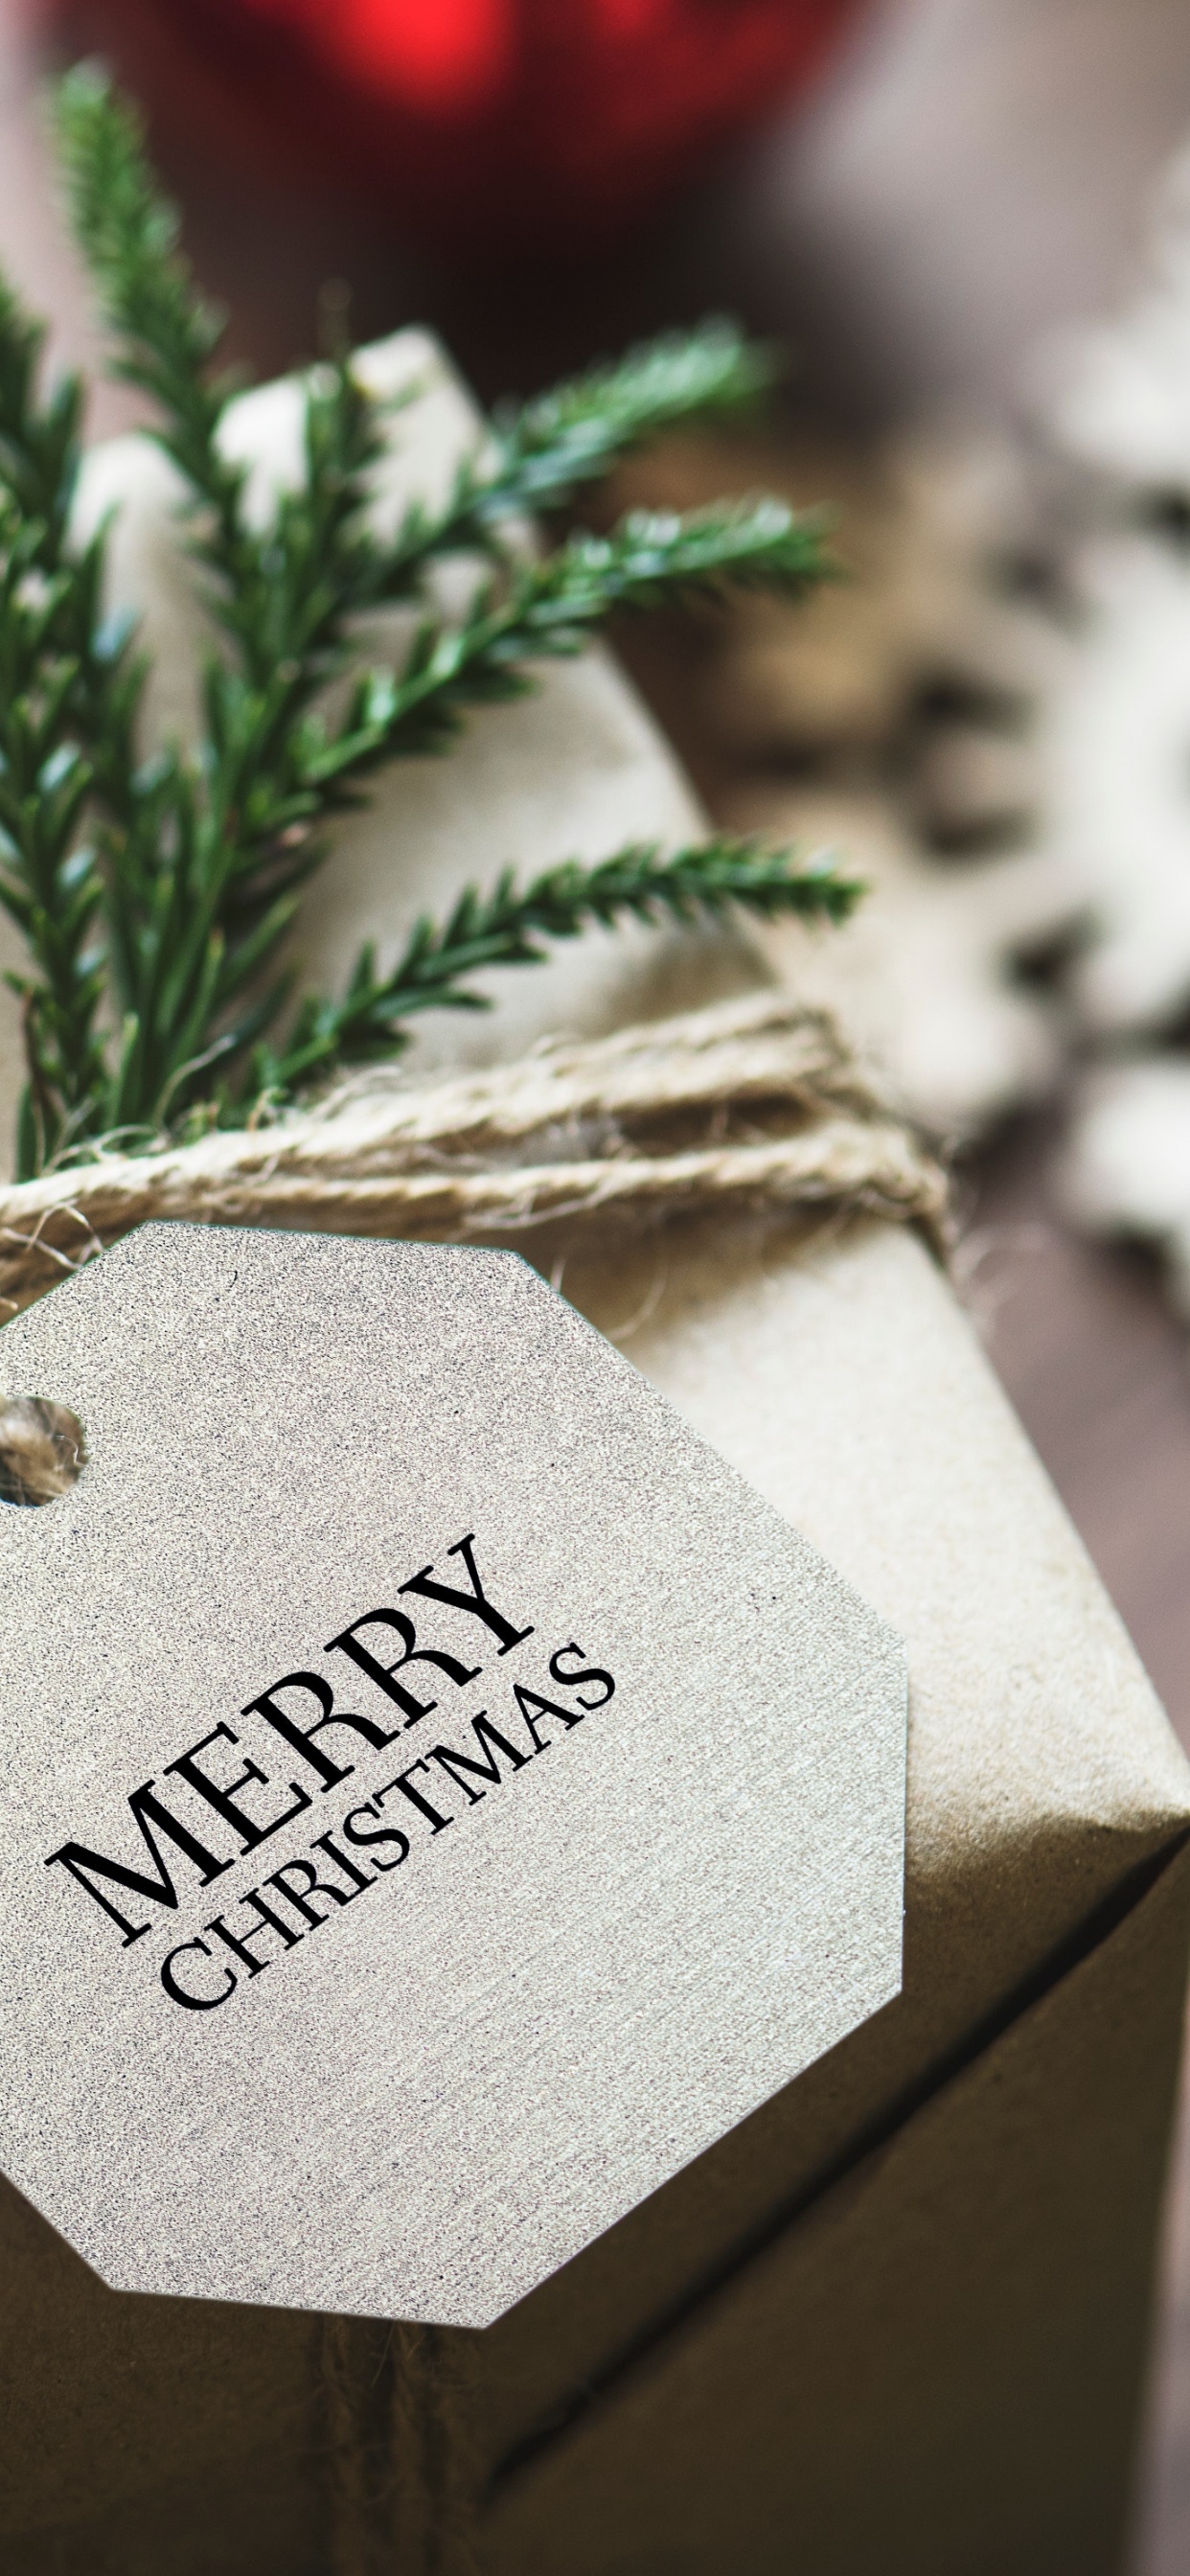 圣诞节那天, 圣诞节礼物, 礼物, 圣诞卡片, 礼品包装 壁纸 1242x2688 允许